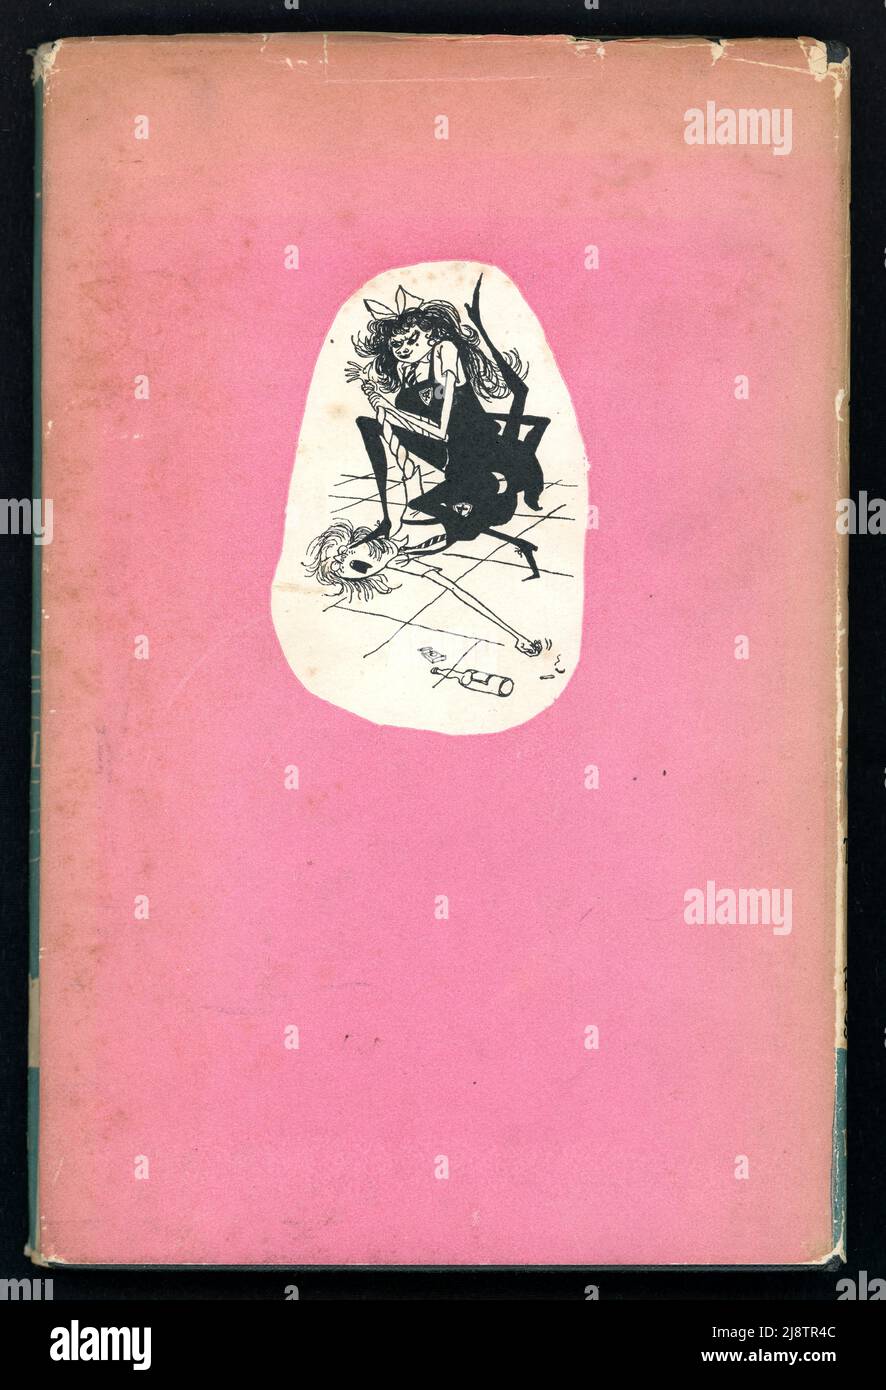 Rückseite einer Kopie der illustrierten Staubhülle des Buches „der Terror von St. Trinian's“ - Illustration von Ronald Searle (der auch der Schöpfer der St. Trinian's School war), geschrieben von Timothy Shy (Pseudonym für D. B. Wyndham Lewis),1952 Stockfoto